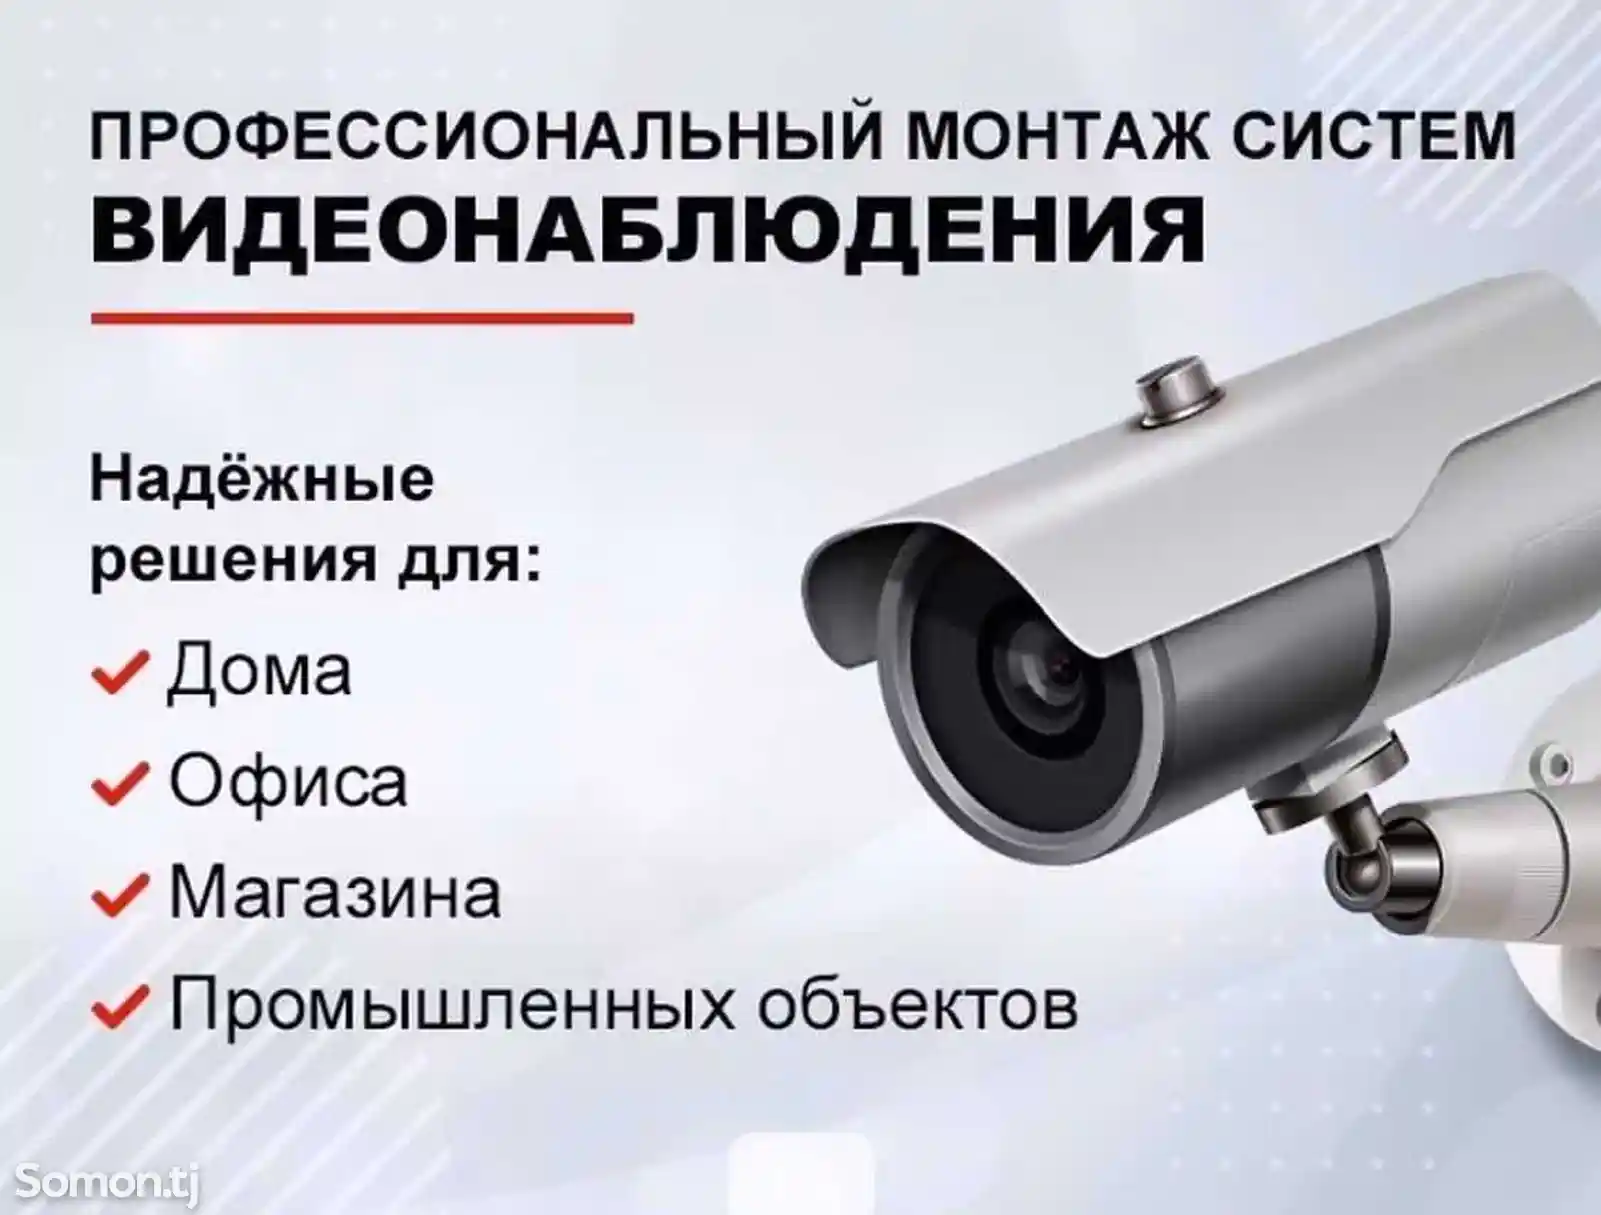 Услуги по установке и настройке камер видеонаблюдения